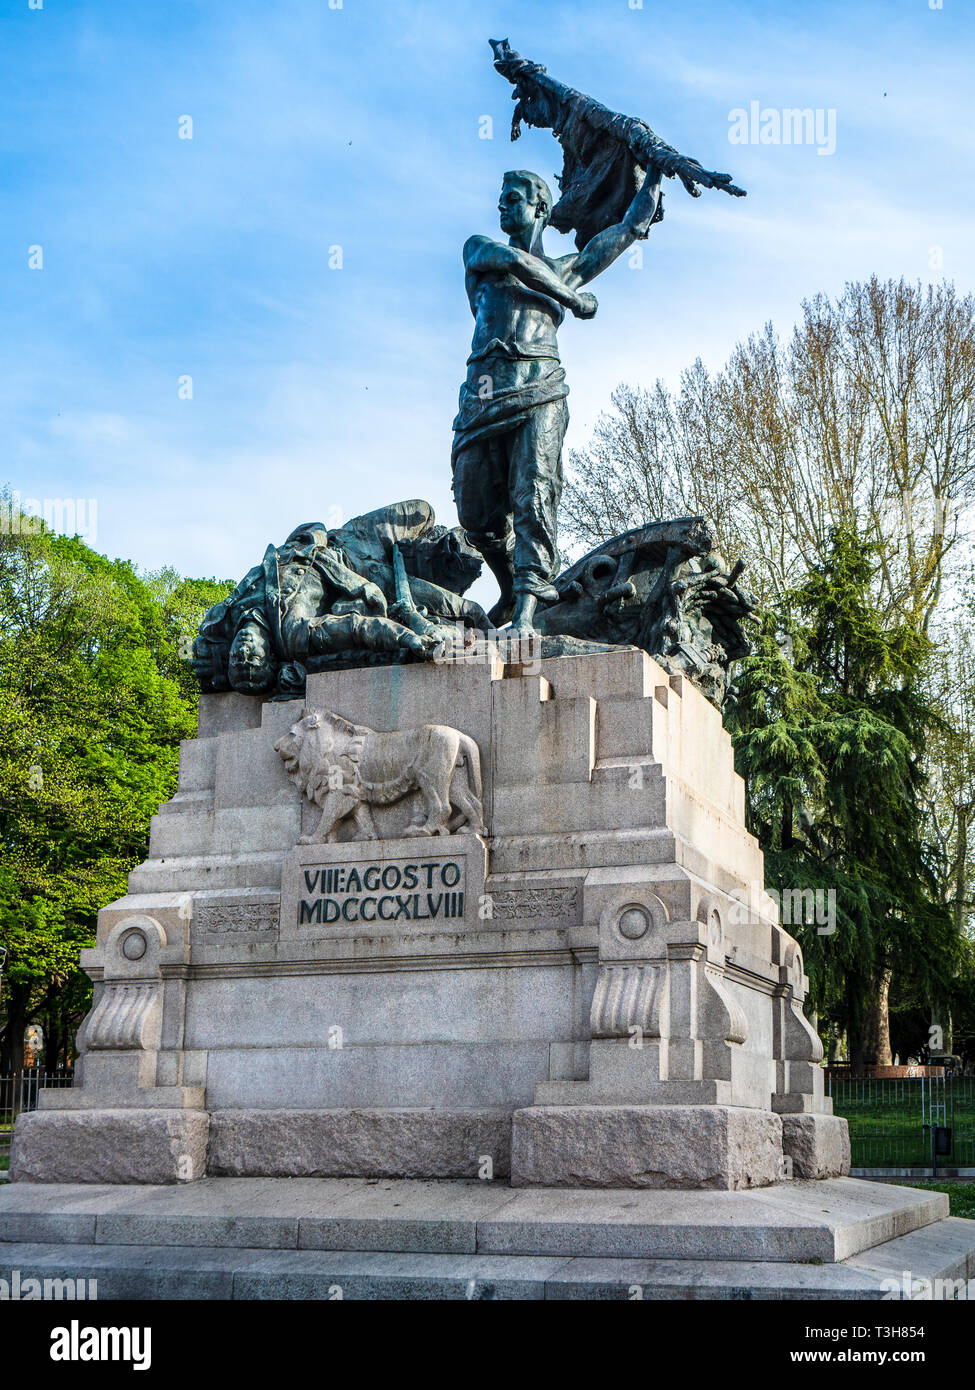 Popolano War Memorial Bologna Italia - Palazzo statua per i morti del 8 agosto 1848 battaglia per l'indipendenza contro l'esercito austriaco. Foto Stock